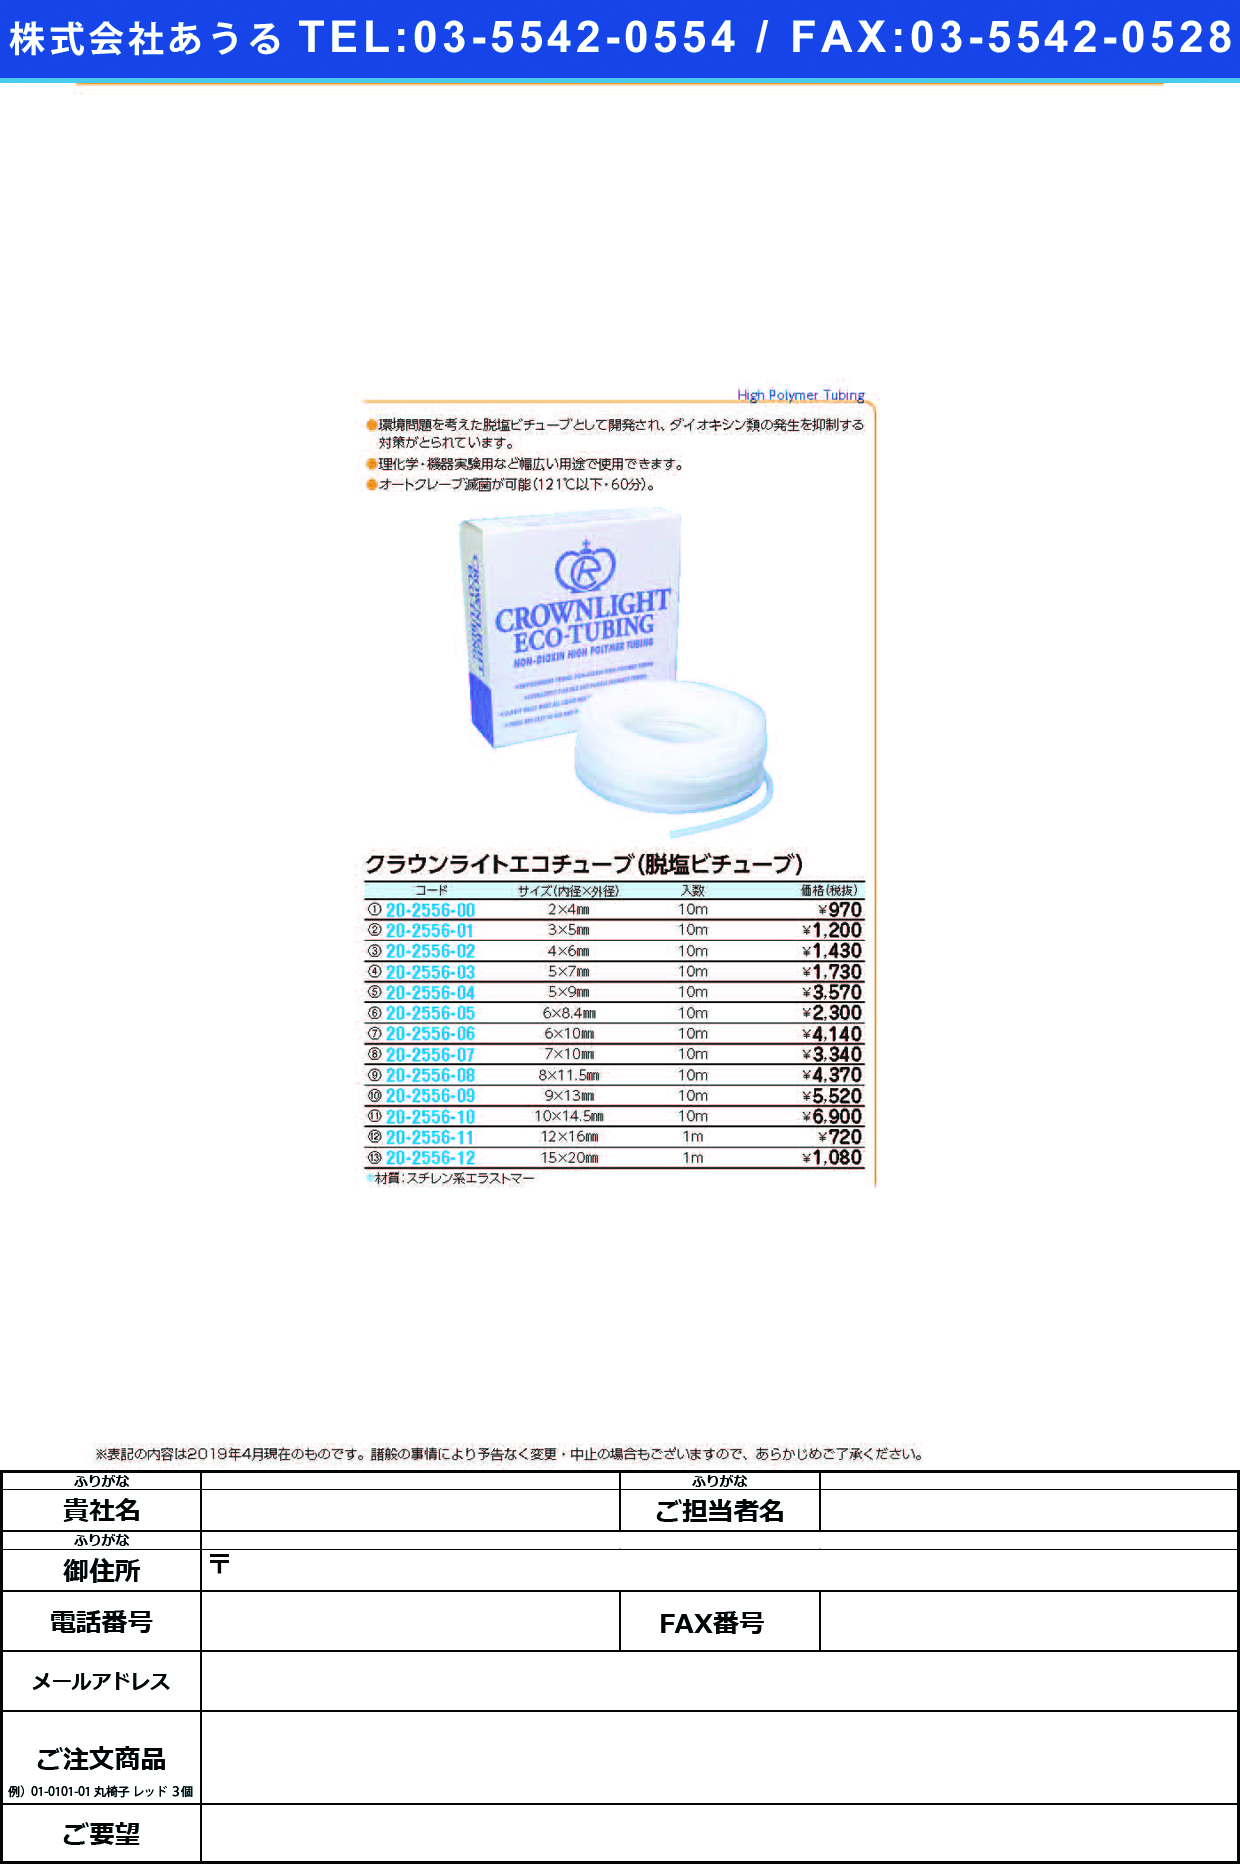 (20-2556-05)クラウンライトエコチューブ 6.0X8.4(10Mｲﾘ) ｸﾗｳﾝﾗｲﾄｴｺﾁｭｰﾌﾞ【1袋単位】【2019年カタログ商品】